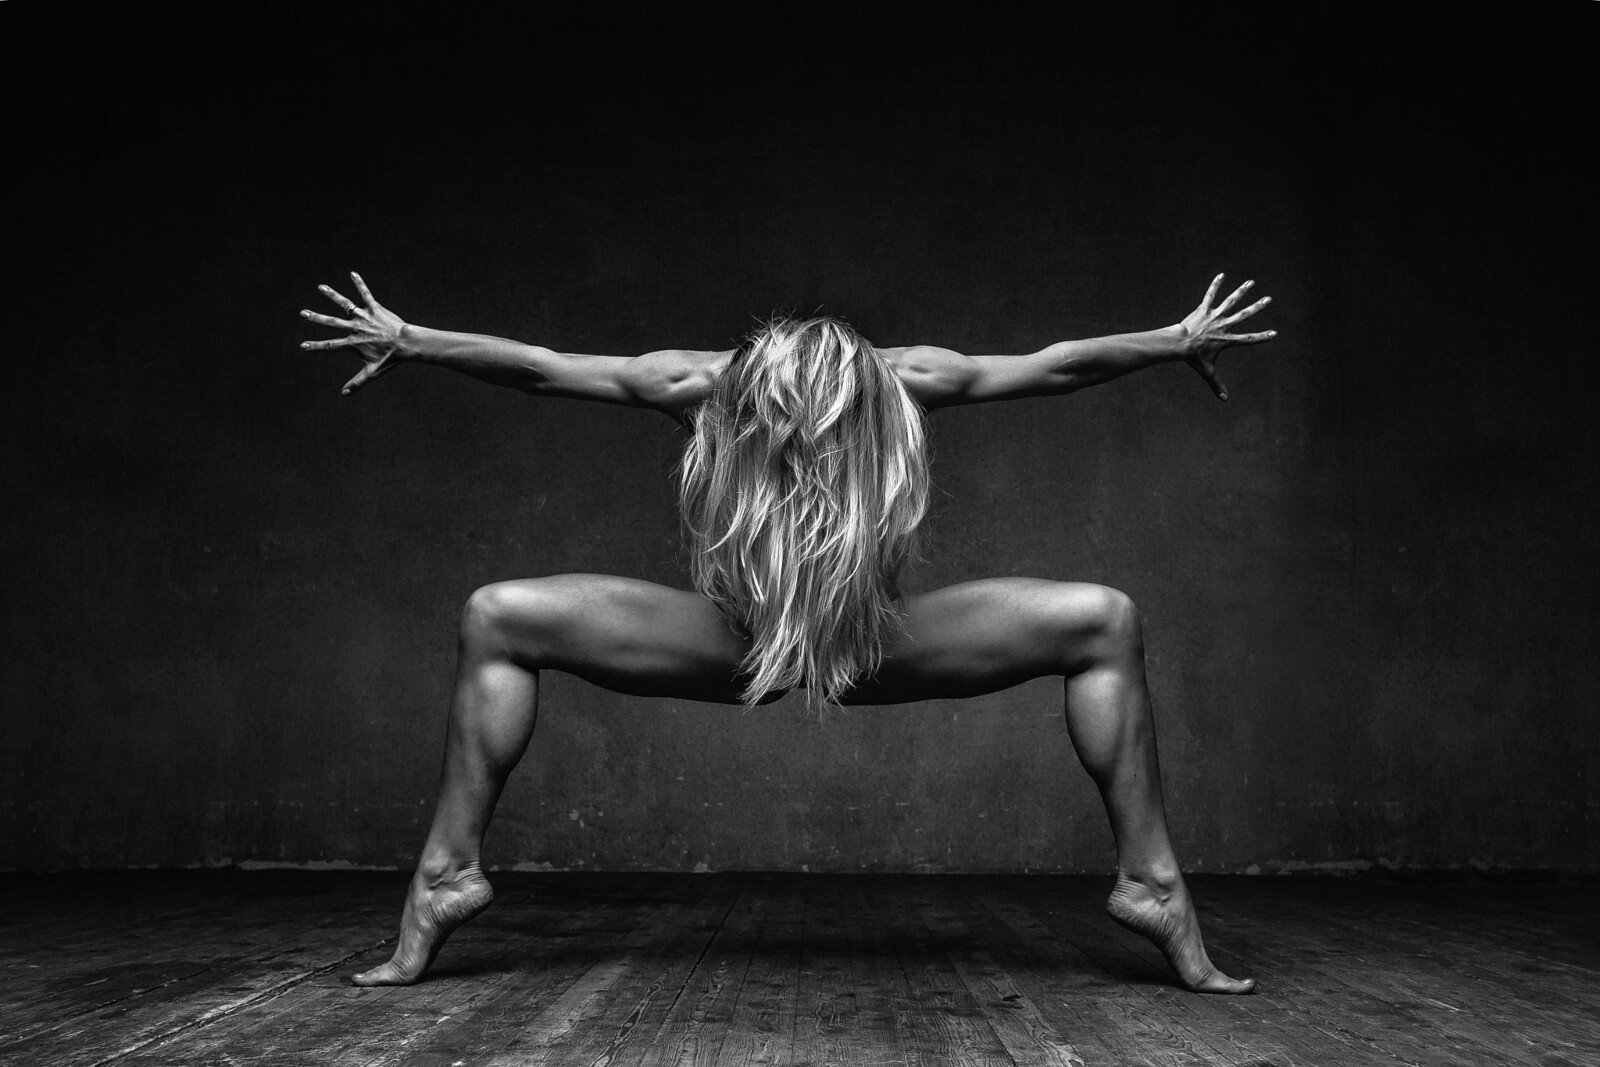 El fotógrafo Alexander Yakovlev inmortaliza la belleza y la fuerza de los cuerpos en movimiento